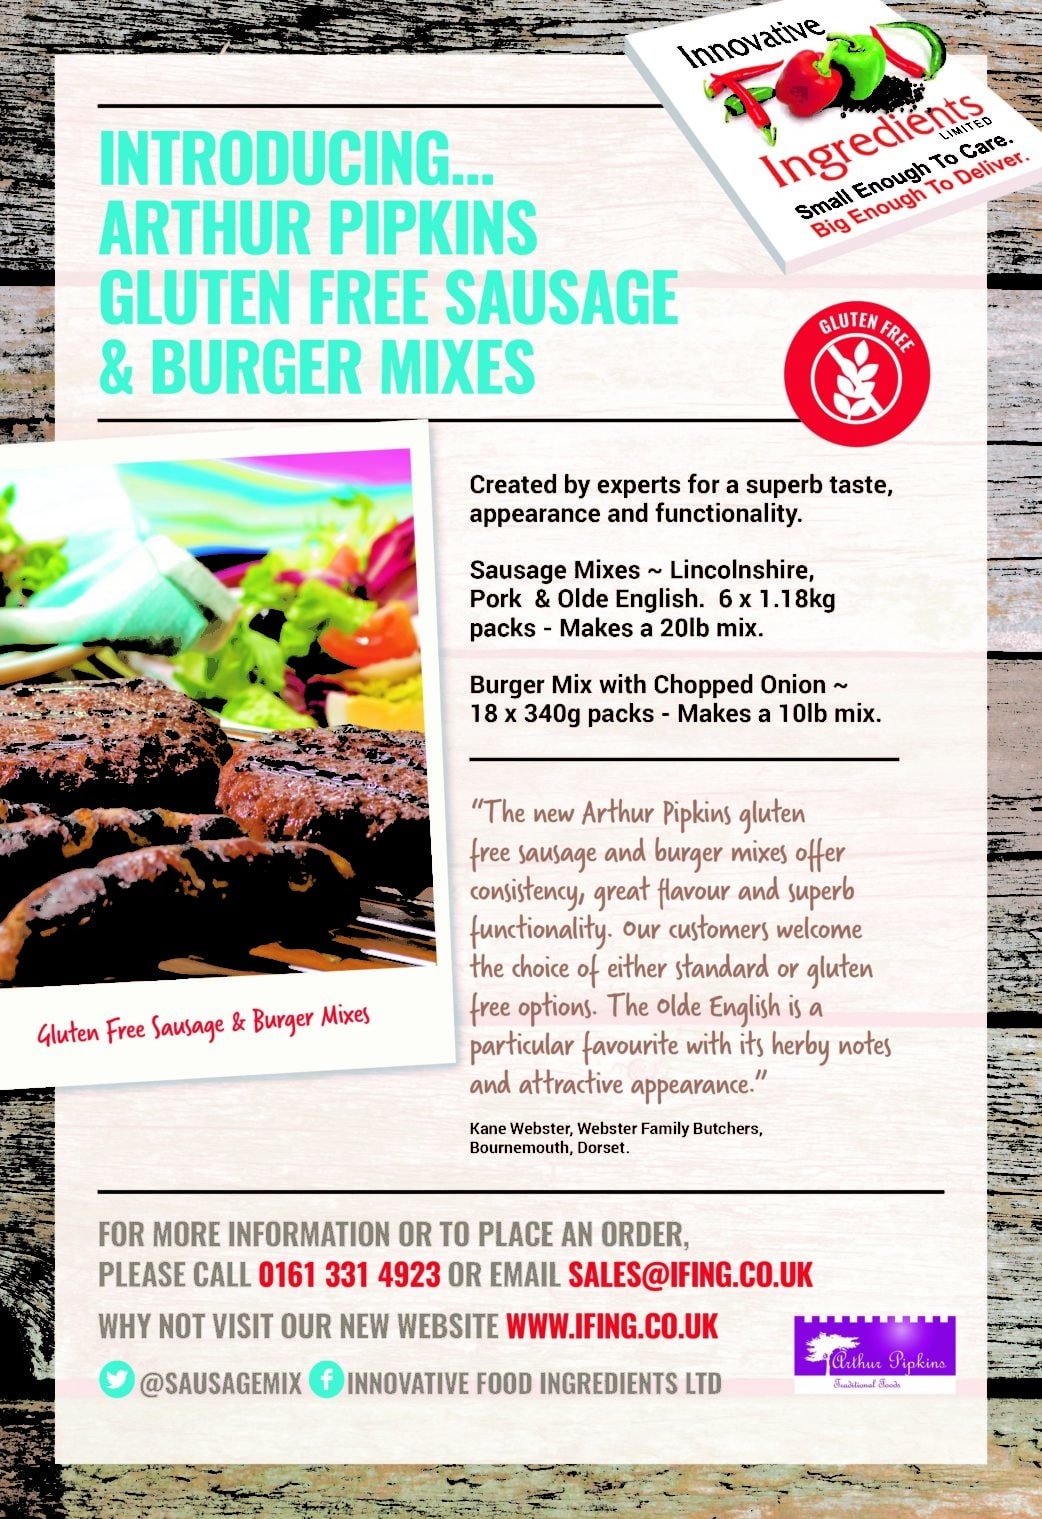 Arthur Pipkins Gluten Free Sausage Mixes and Burger Mixes